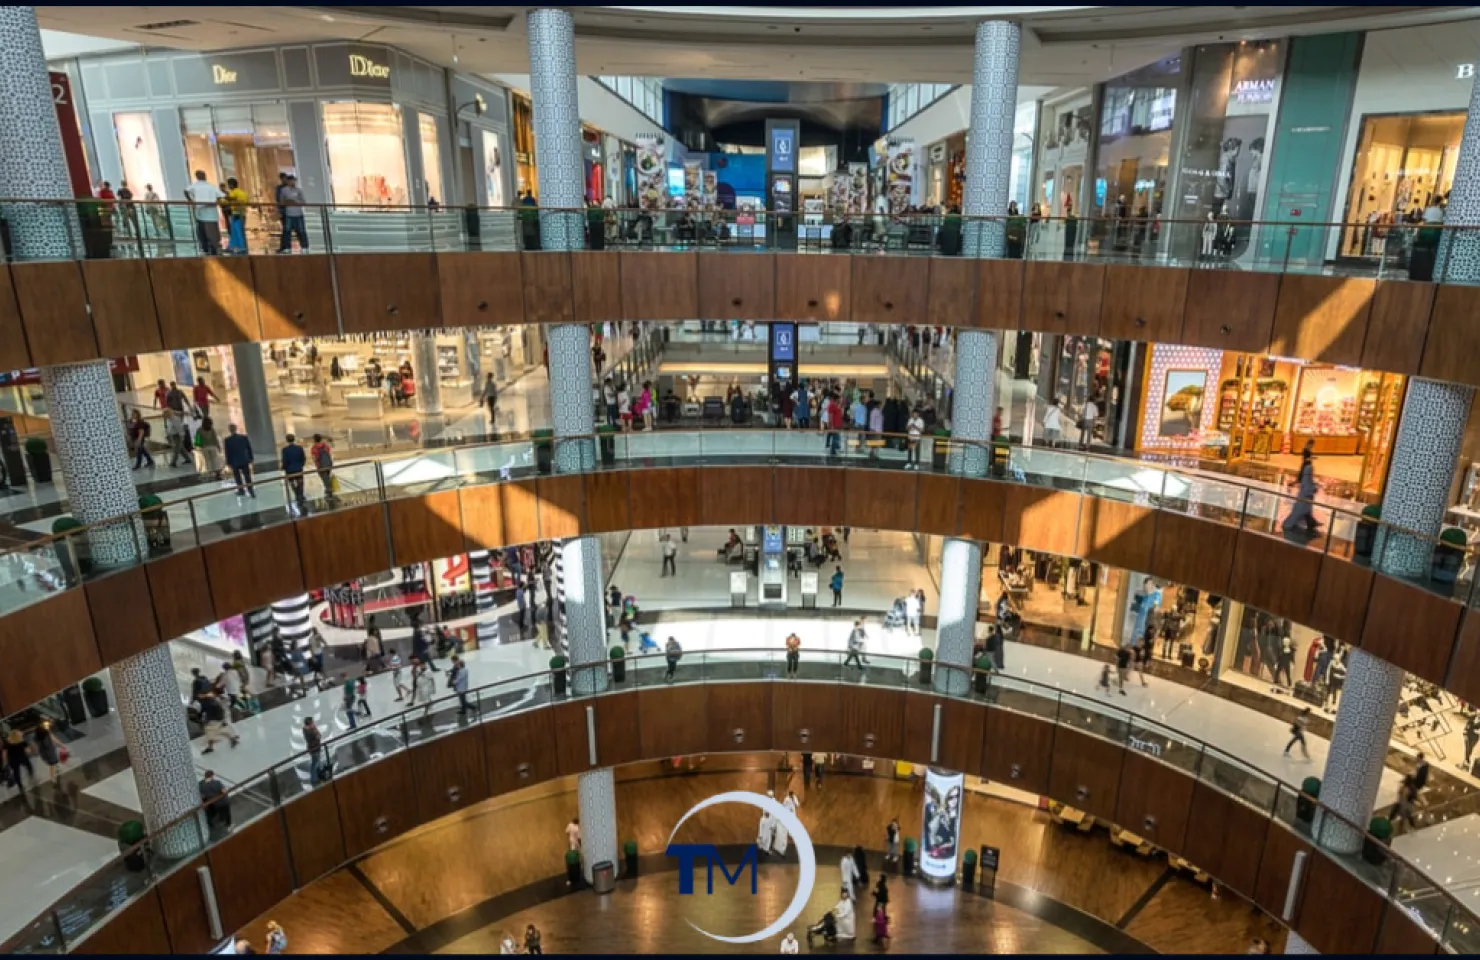 The Dubai Mall Family Experience